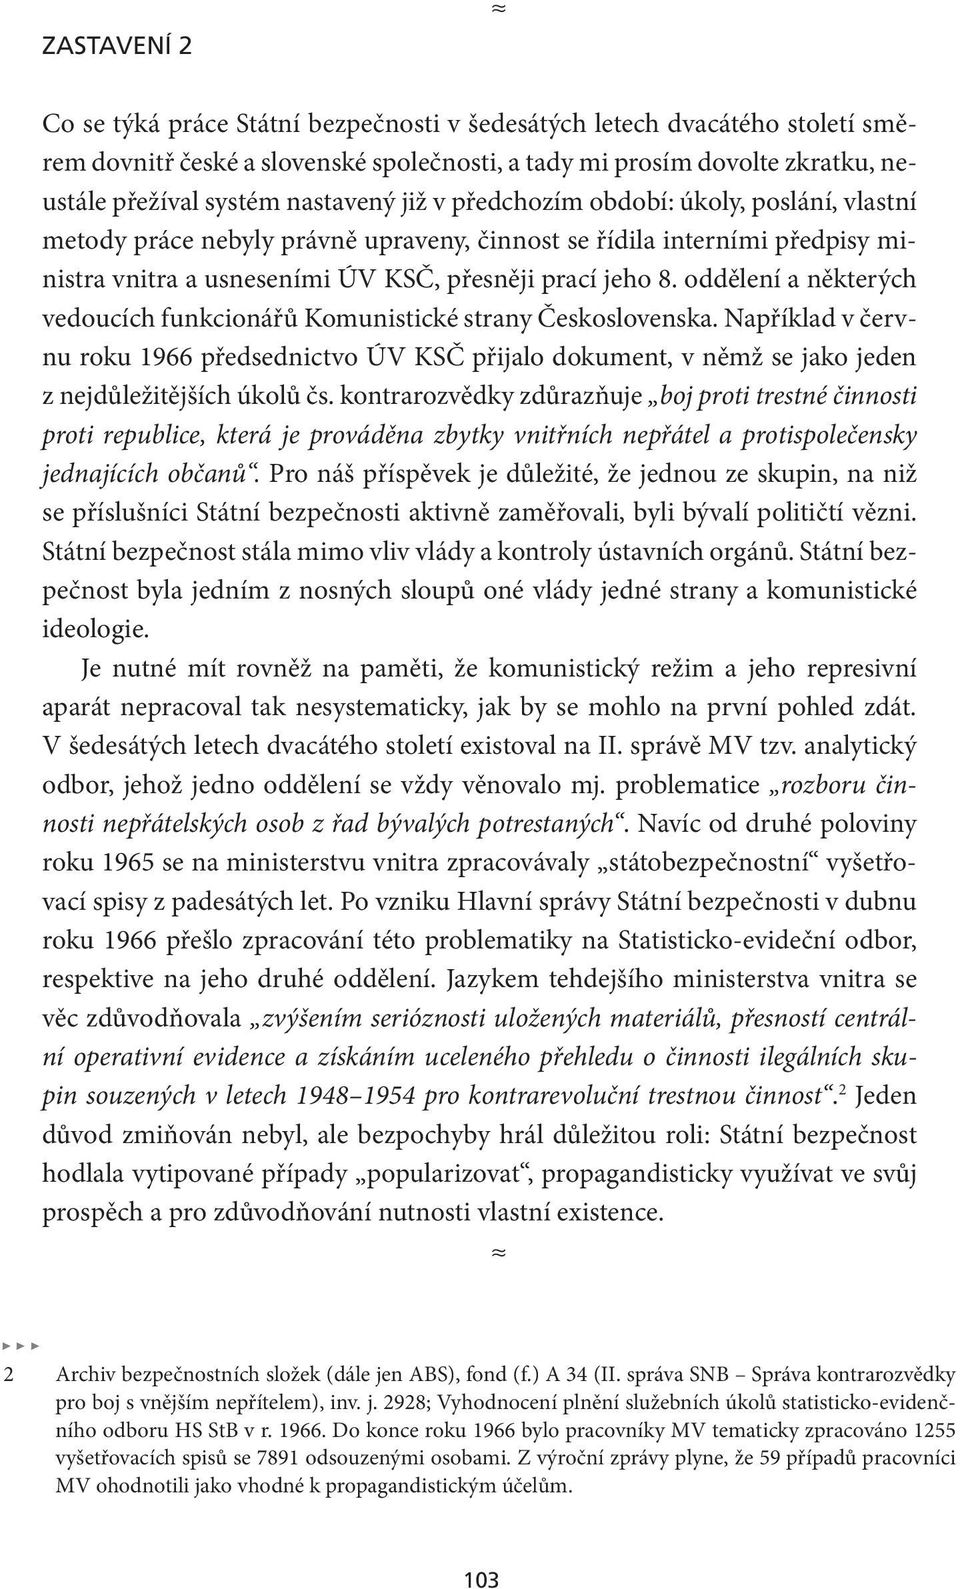 oddělení a některých vedoucích funkcionářů Komunistické strany Československa. Například v červnu roku 1966 předsednictvo ÚV KSČ přijalo dokument, v němž se jako jeden z nejdůležitějších úkolů čs.